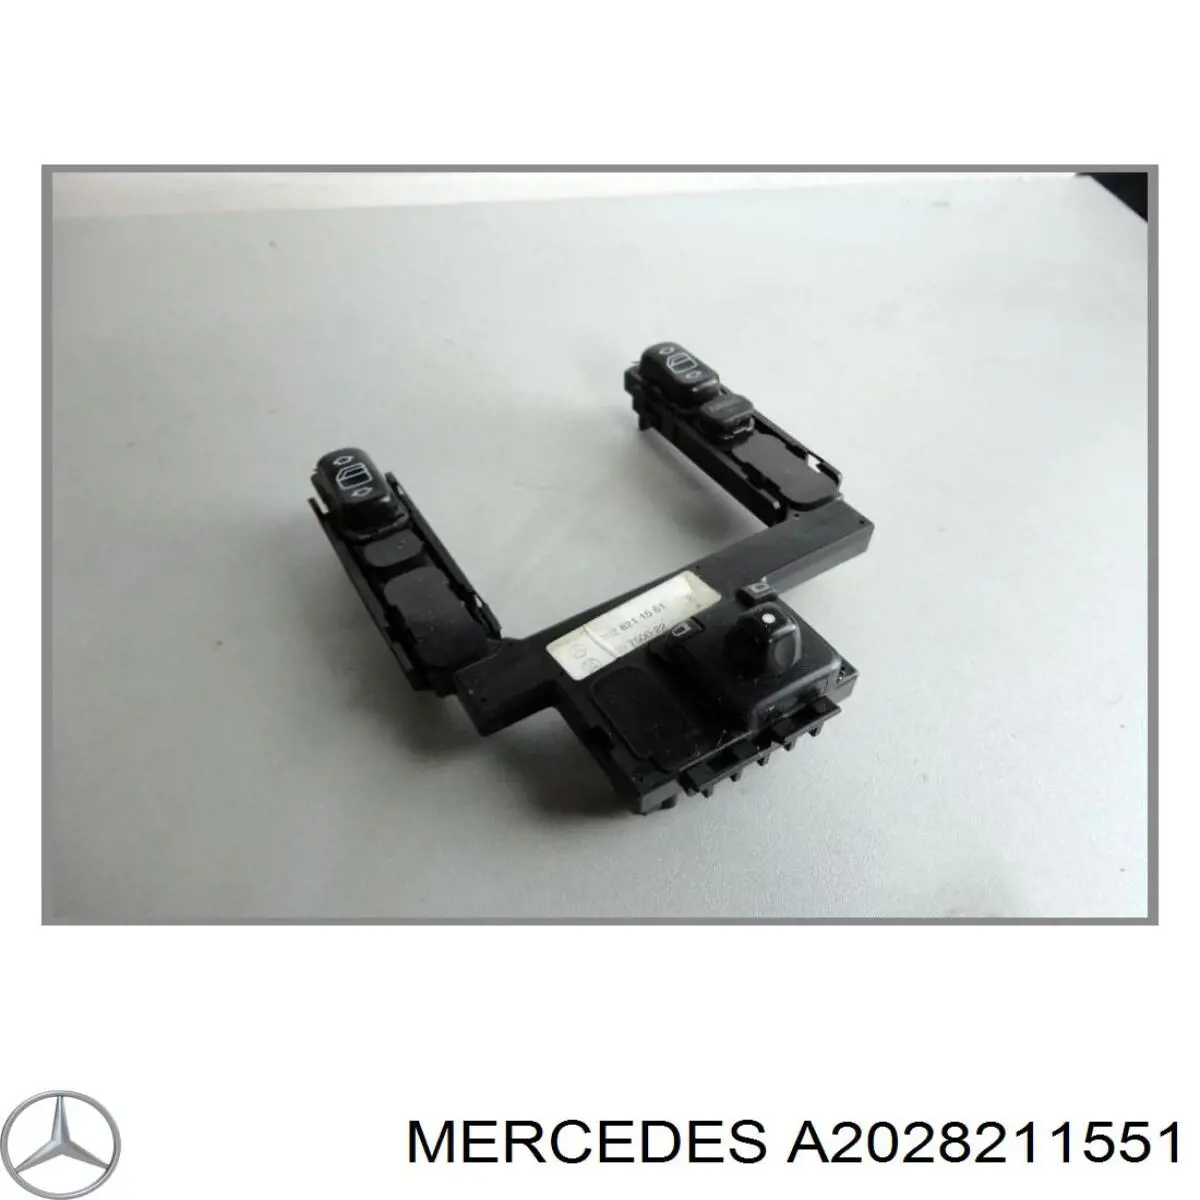 A20282119517C45 Mercedes кнопочный блок управления стеклоподъемником центральной консоли